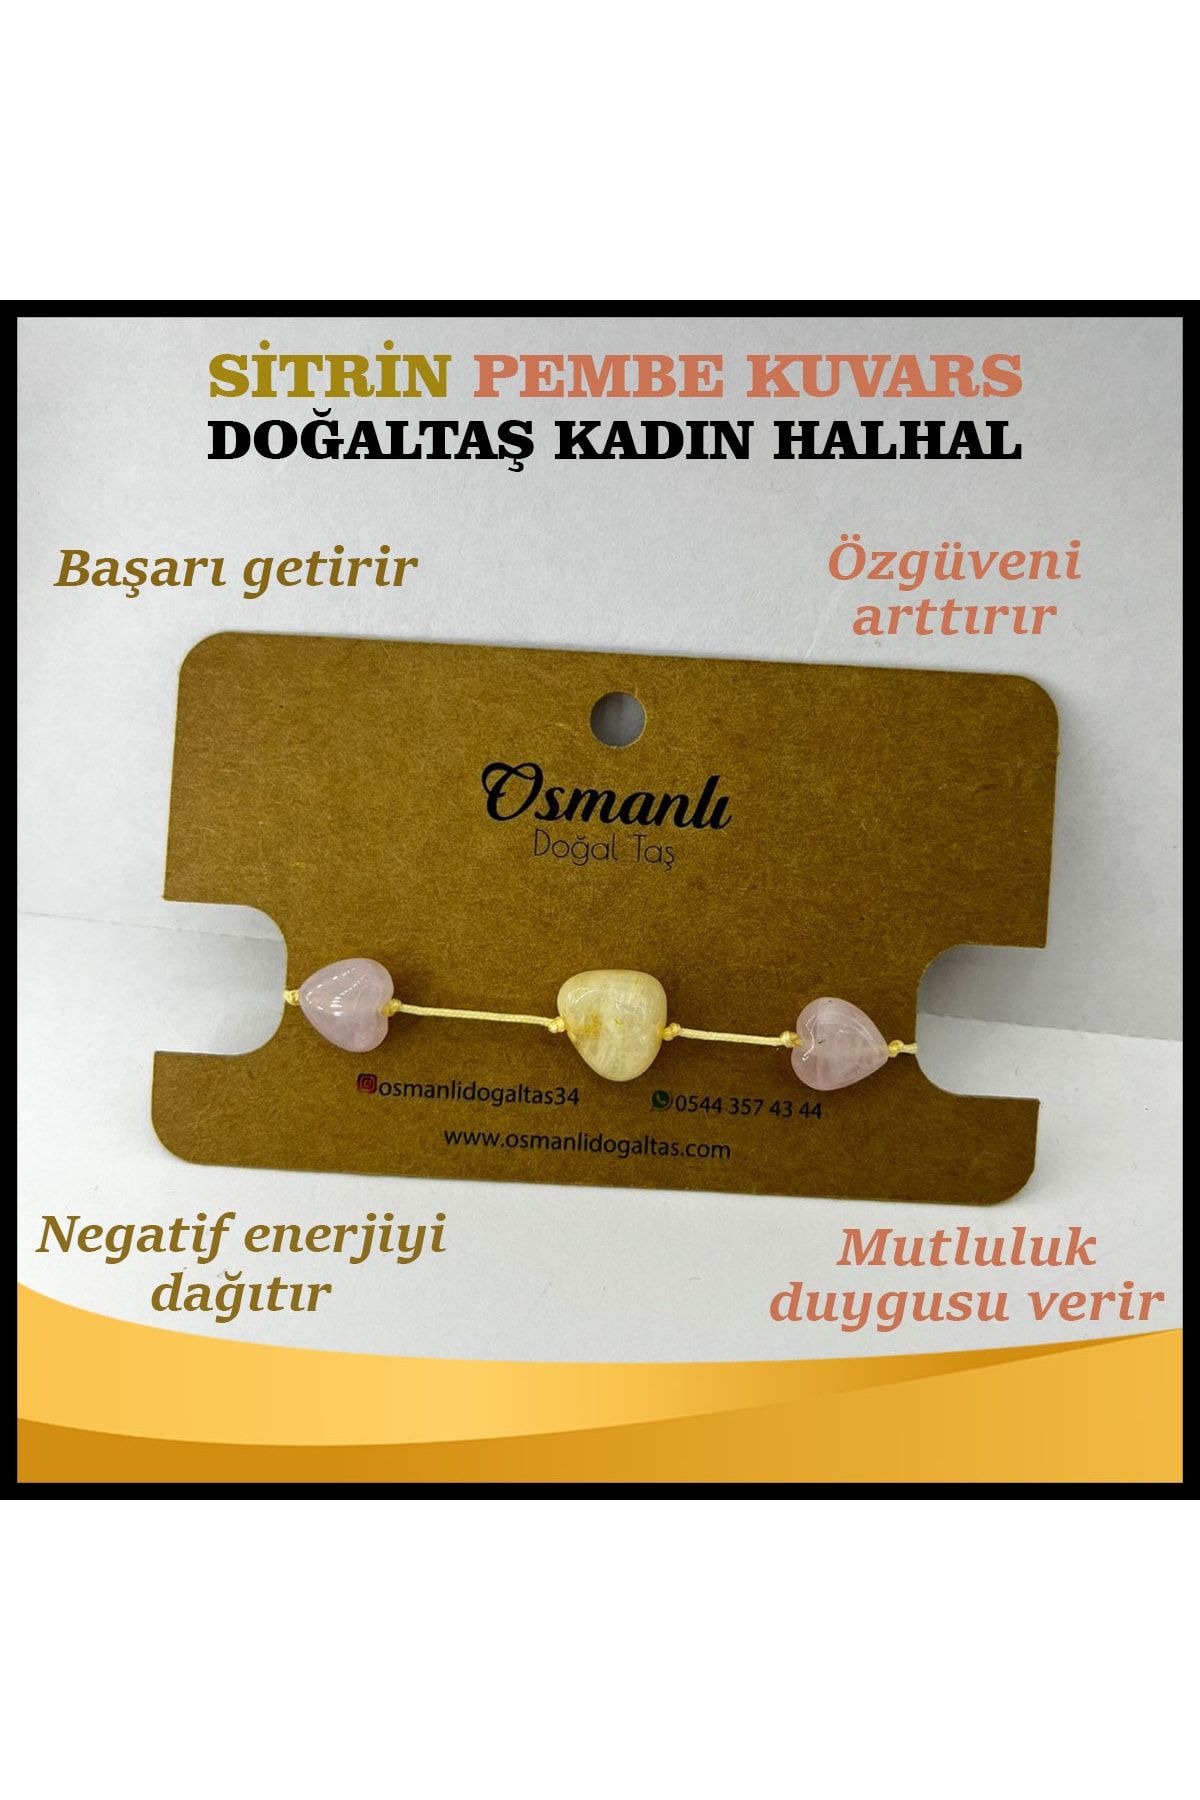 OSMANLI DOĞAL TAŞ Sertifikalı Sitrin, Pembe Kuvars Doğaltaş Kadın Halhal Ts033